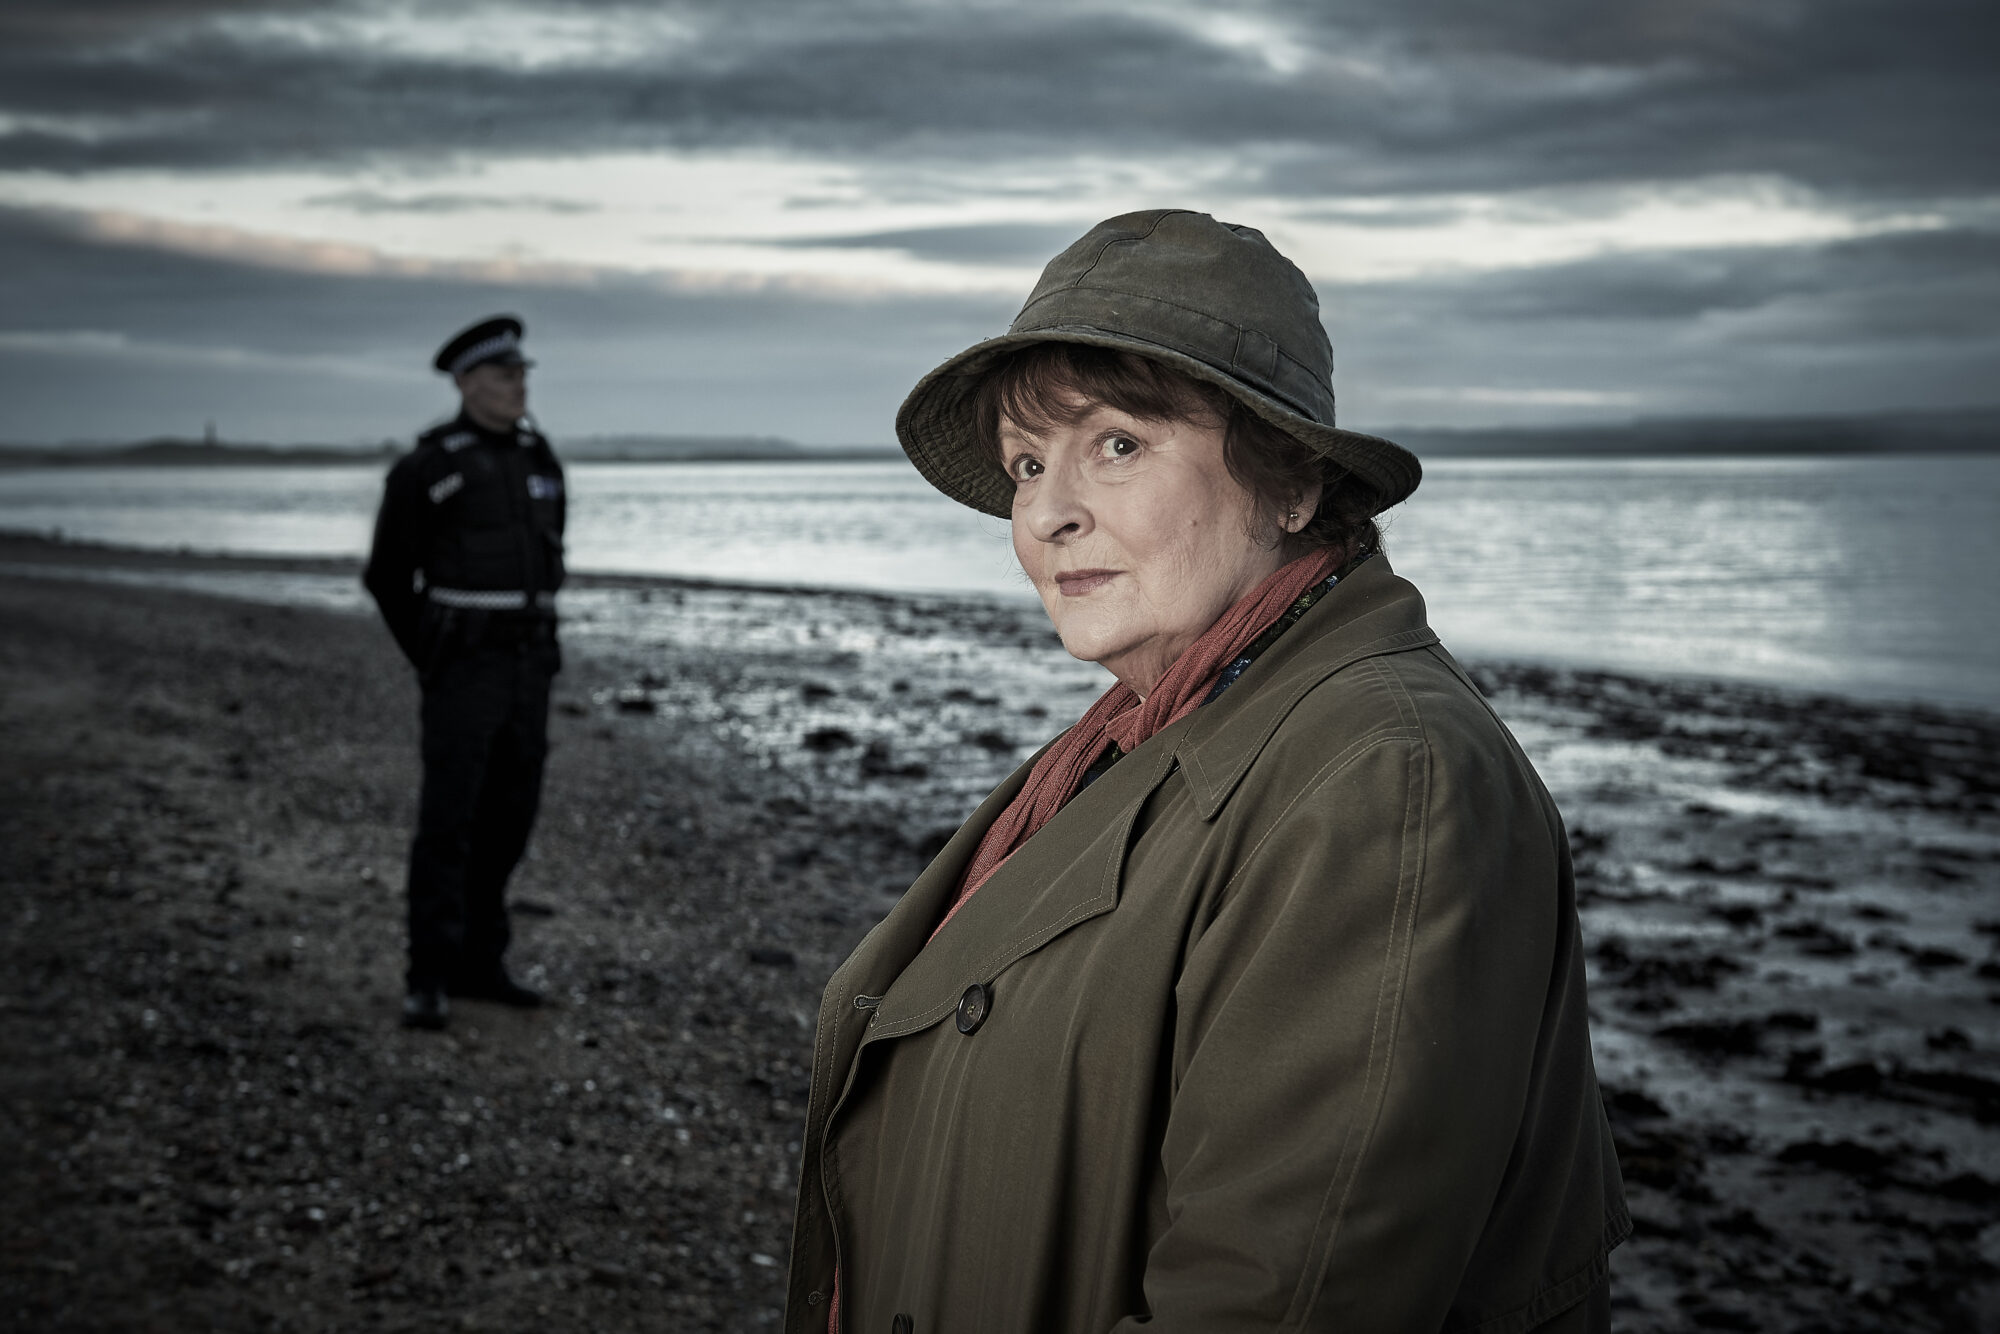 Etterforskar Vera står på ei strand i sitt karakteristiske antrekk, med hatt og frakk. I bakgrunnen står ein politimann i uniform.